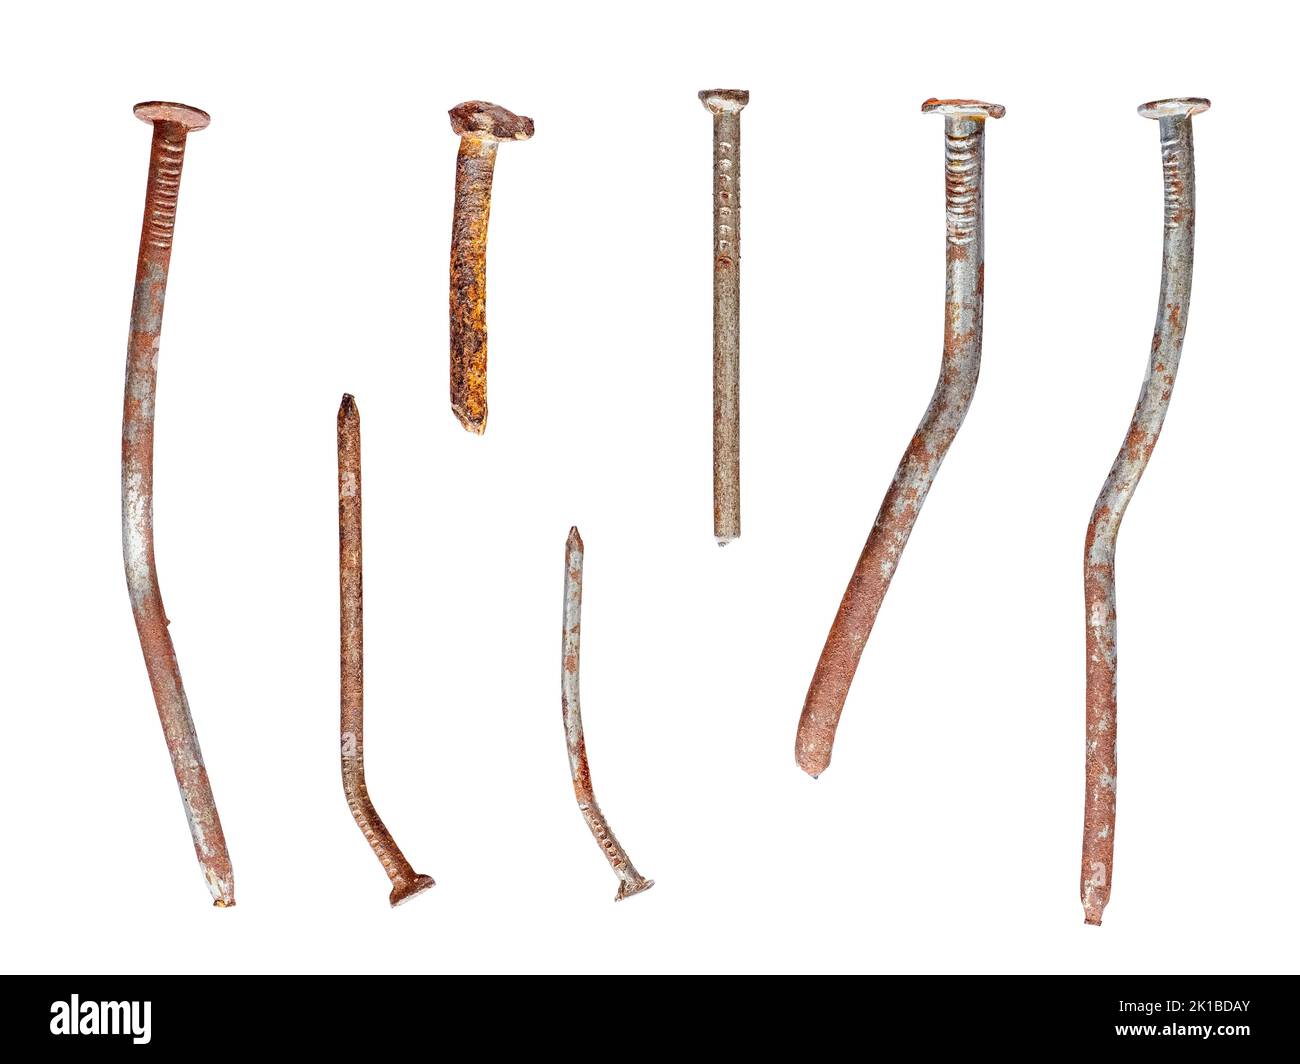 Ongles anciens et gauchis corrodés, utilisés et oxydés, isolés sur fond blanc Banque D'Images